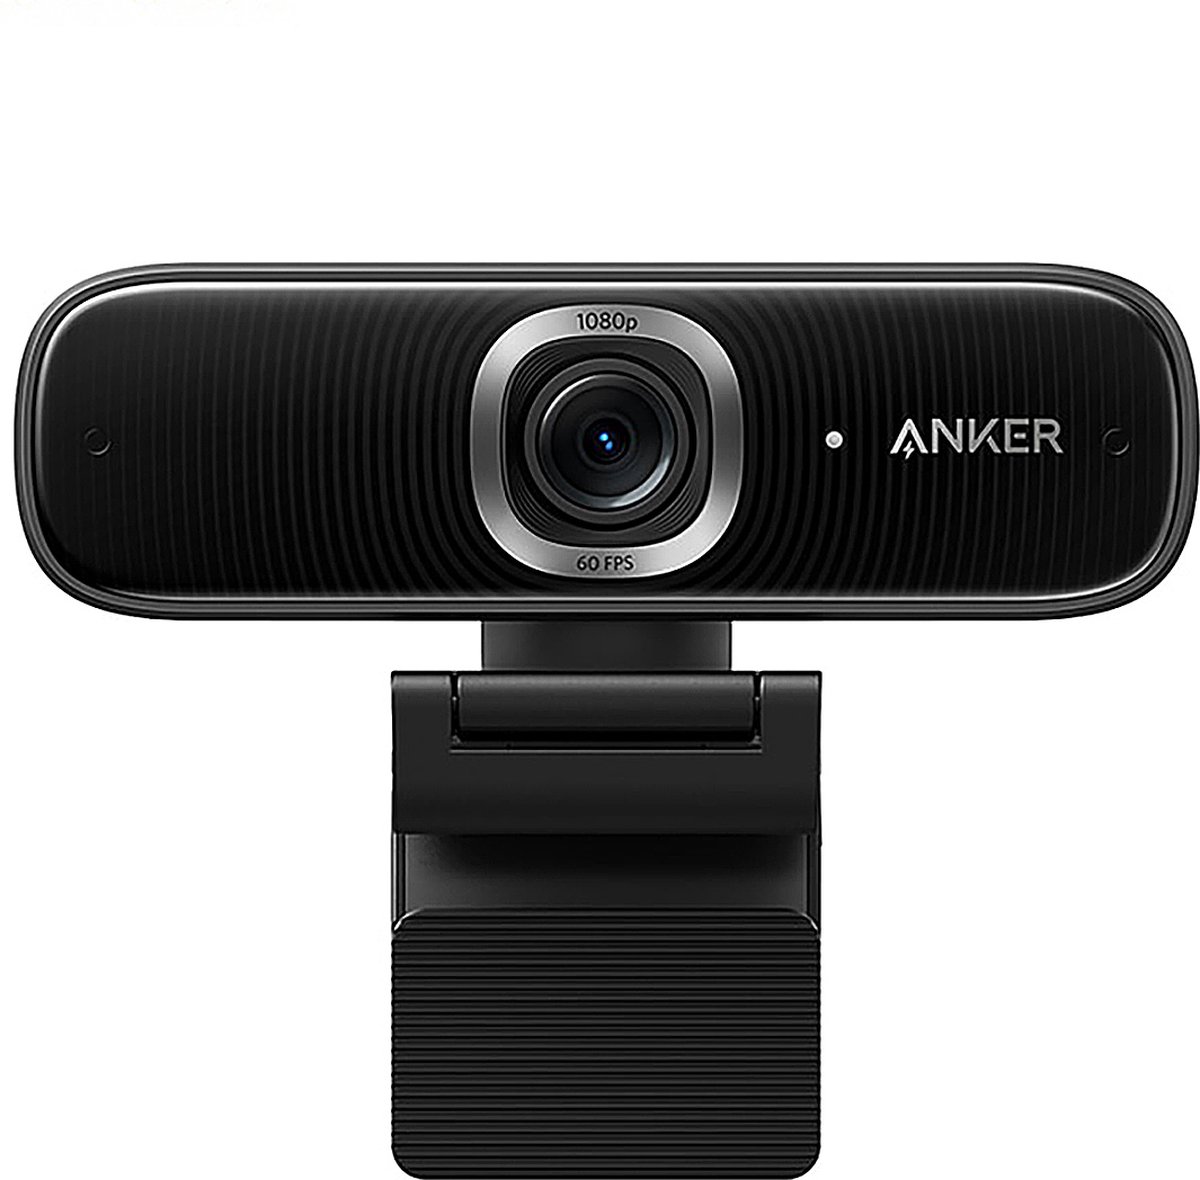 ANKER Webcam - Webcam Voor PC Full HD - Webcam met Microfoon En Noise-Canceling - Dual Auto Focus - Hoge Kwaliteit